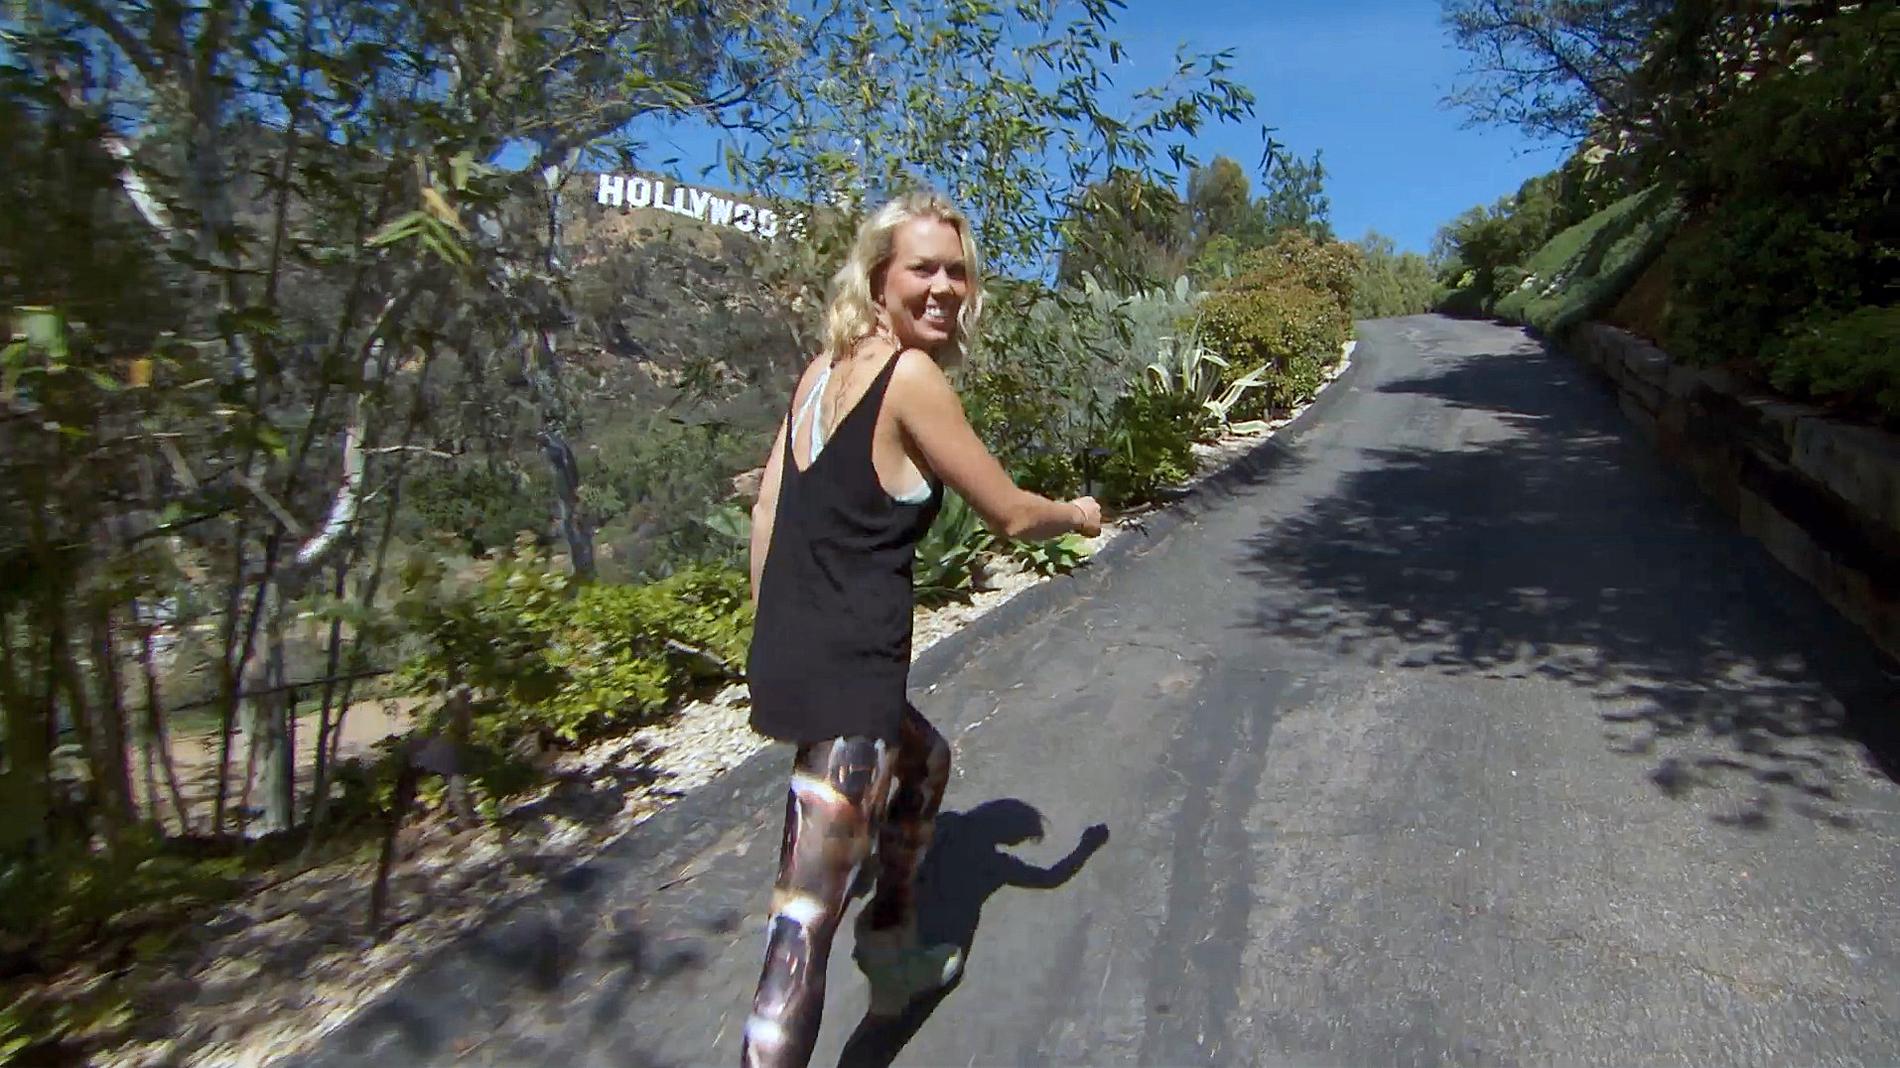 Sofie Prydz på infarten till huset, med Hollywood-skylten i bakgrunden.